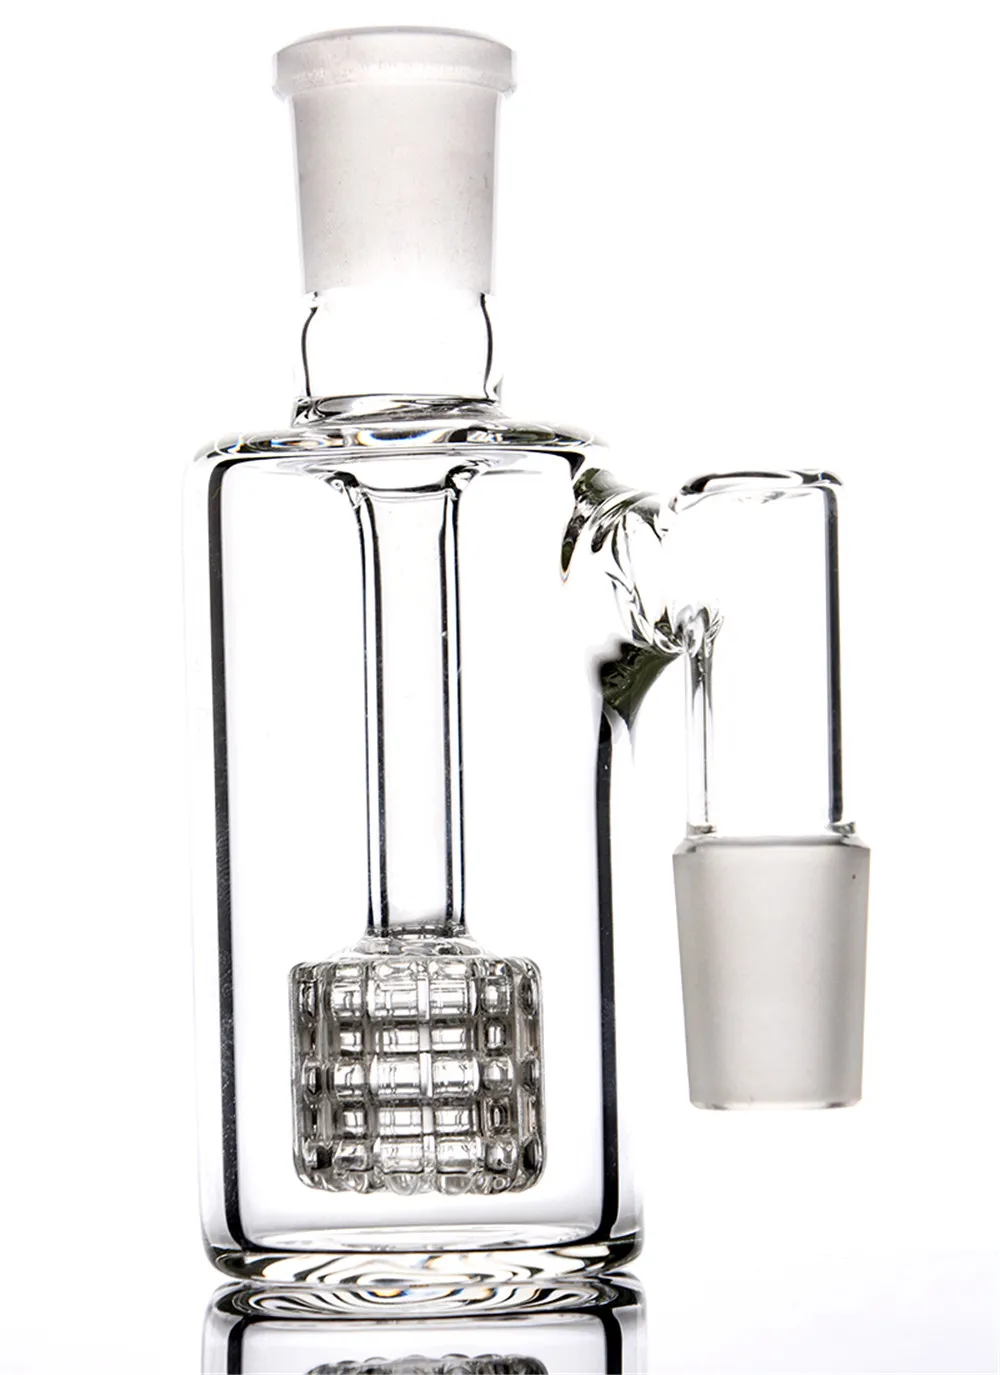 In bouillon dik glas 14 mm asvanger 18 mm glazen asvanger matrix perc voor waterpijpbong rookaccessoires ashcatcher